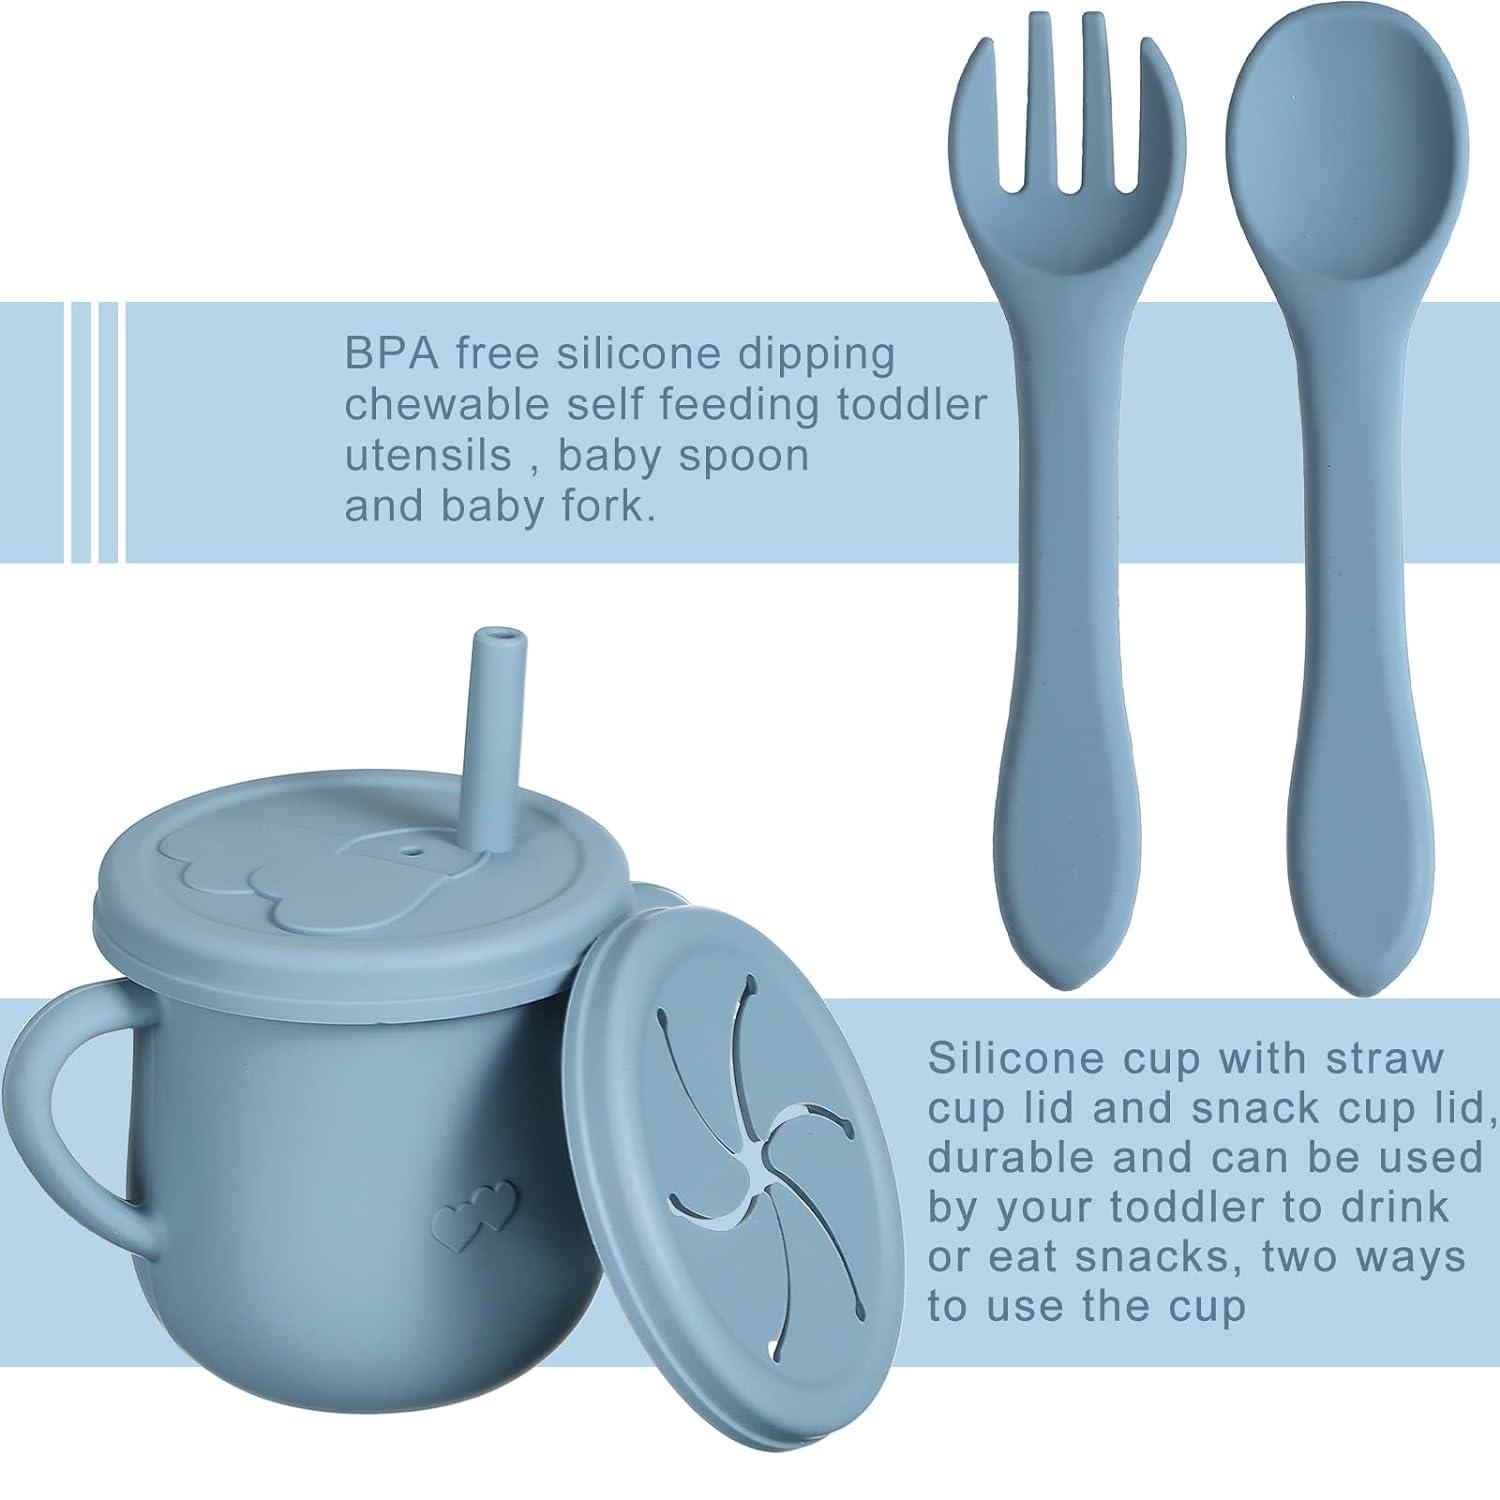 Shop Silicone Baby Feeding Set, Infant Eating Utensils, Silicone Baby  Products, Baby Feeding